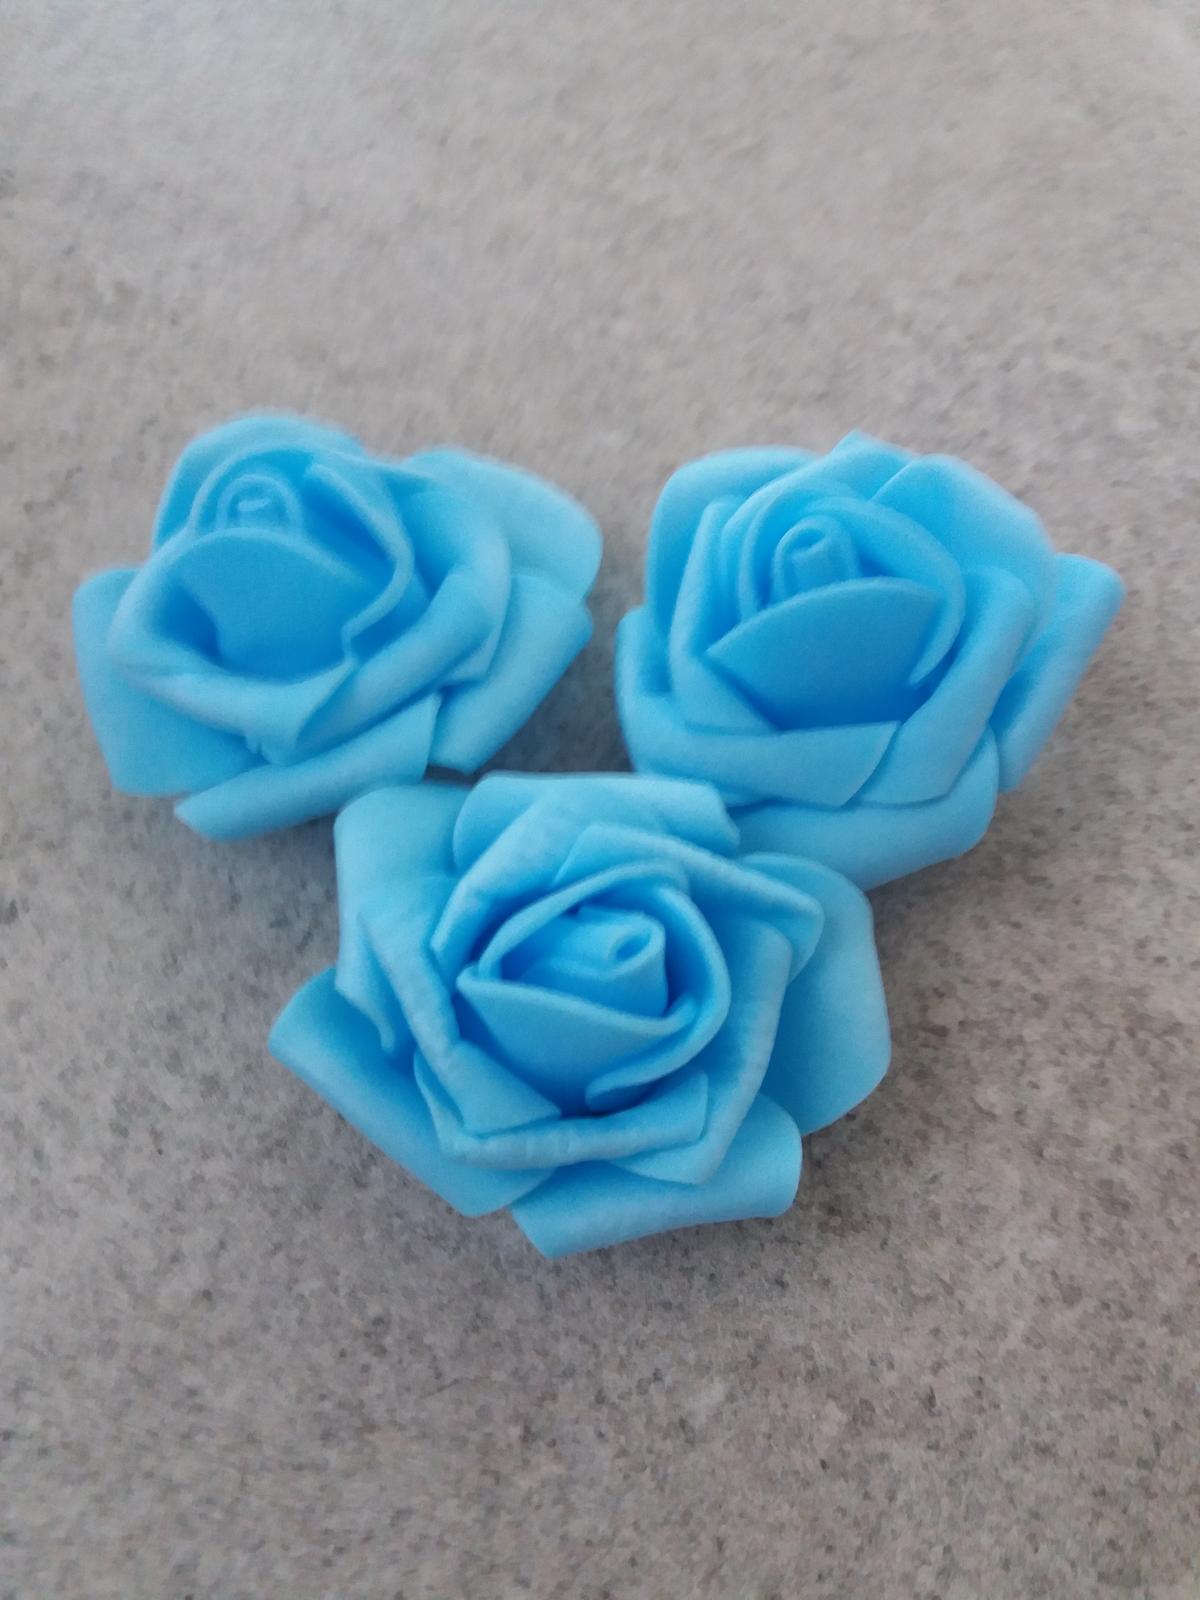 Pěnové růže 4 cm světle modré  balení po 10 ks - Obrázek č. 1